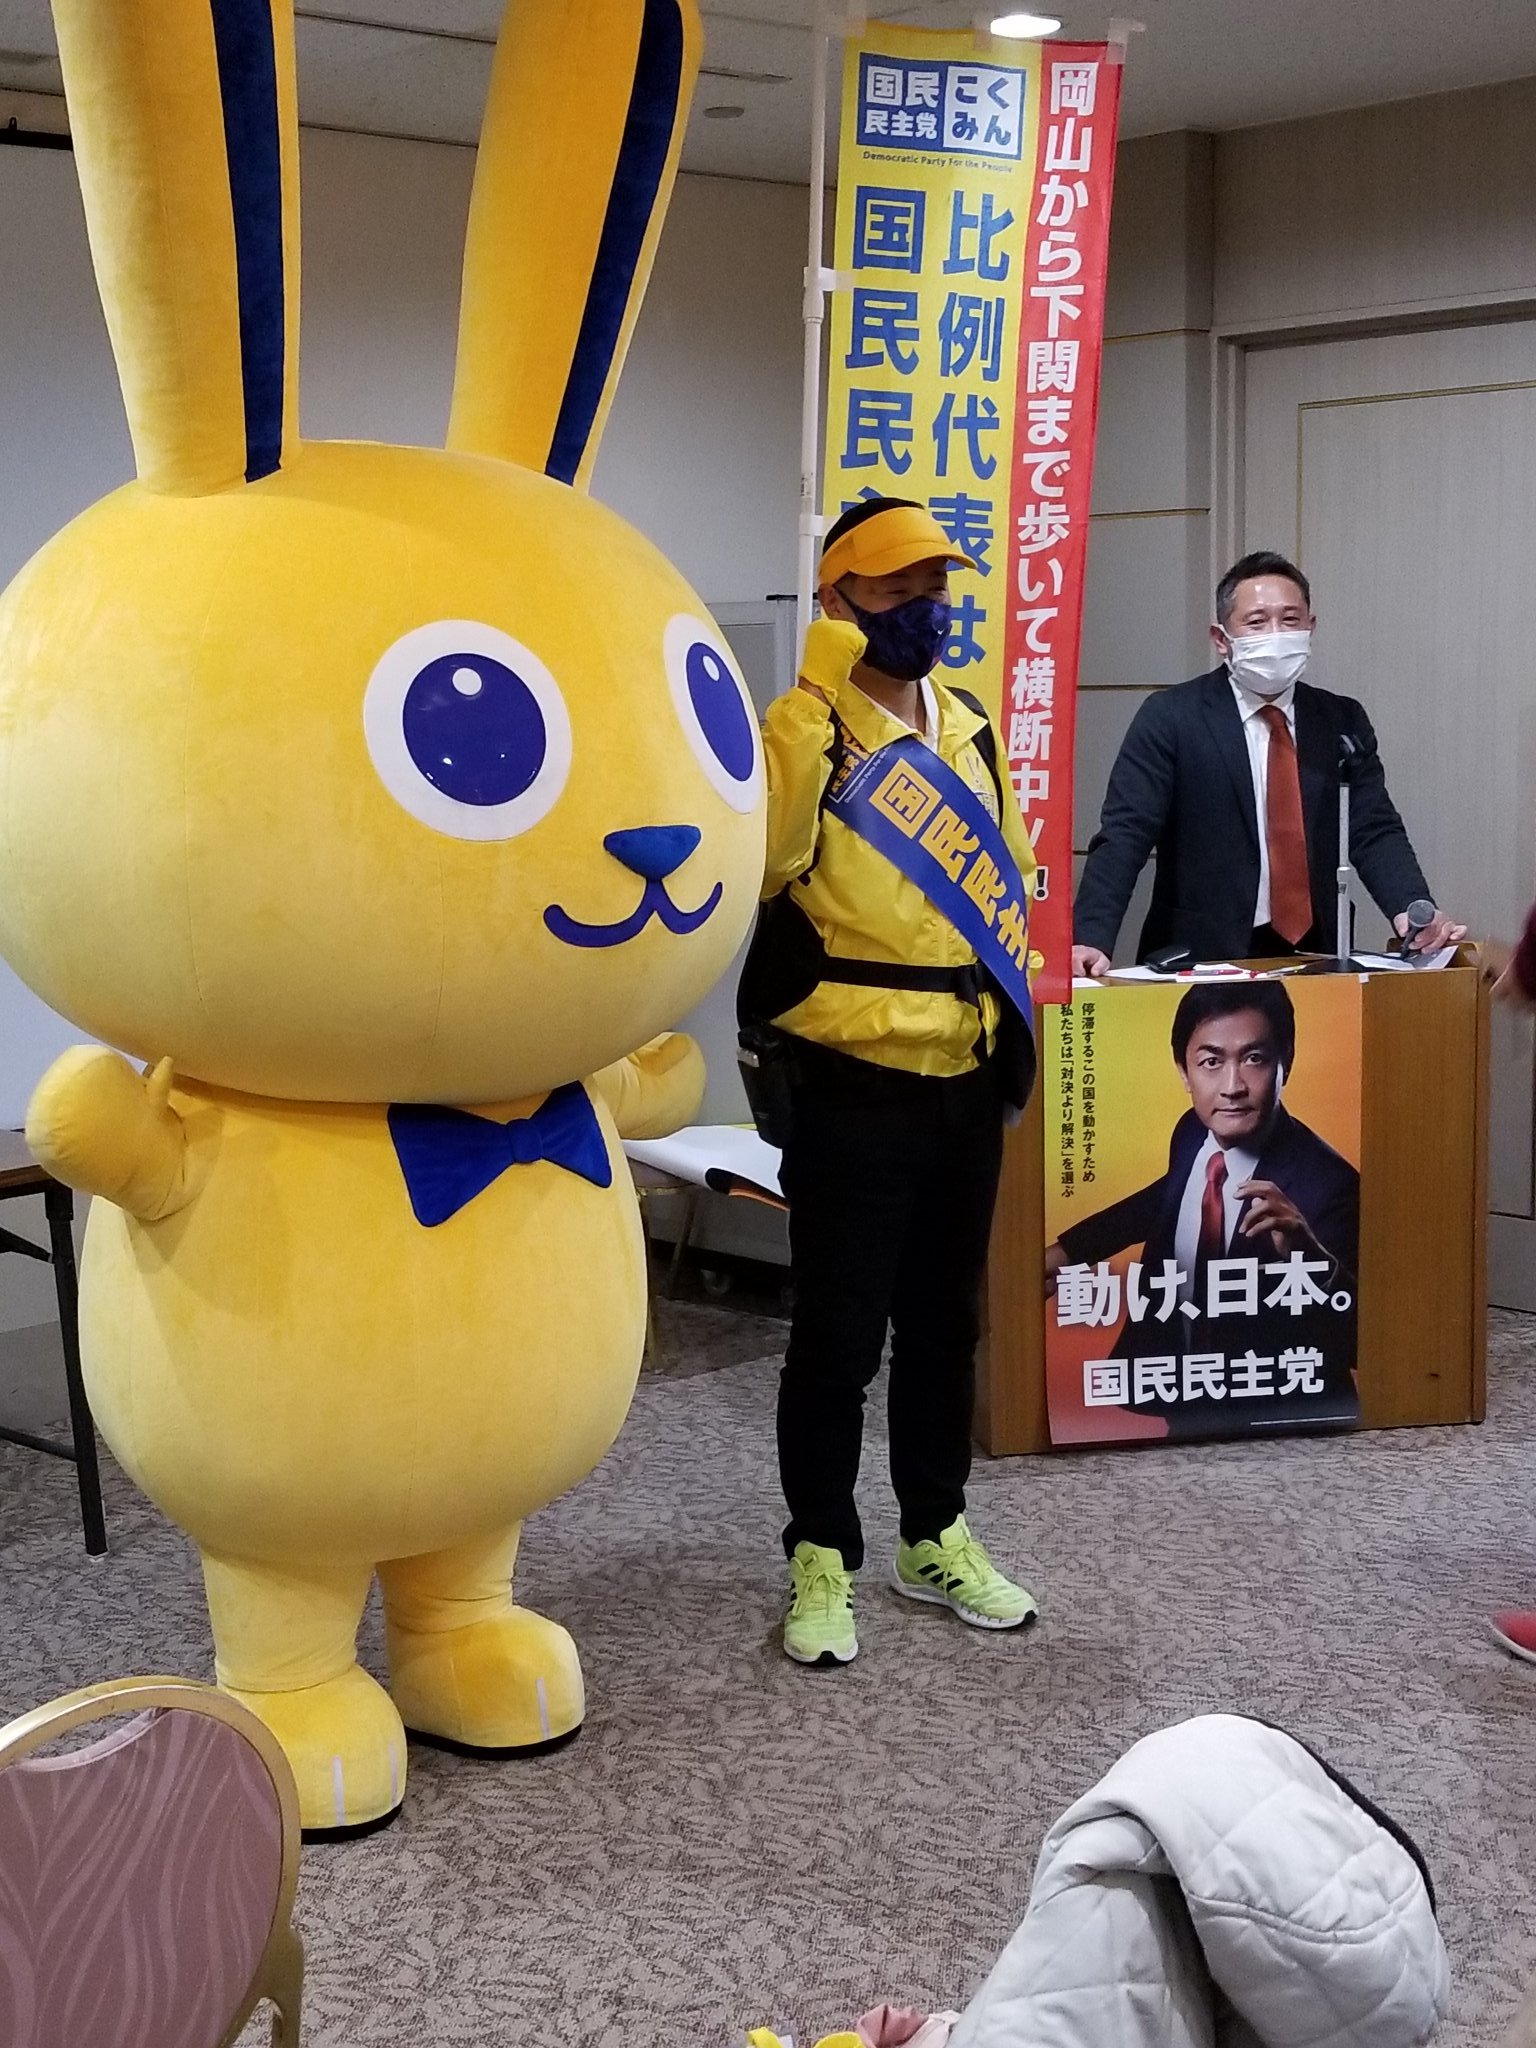 国民民主党東京都連の『こくみんセッション』 に参加いたしました